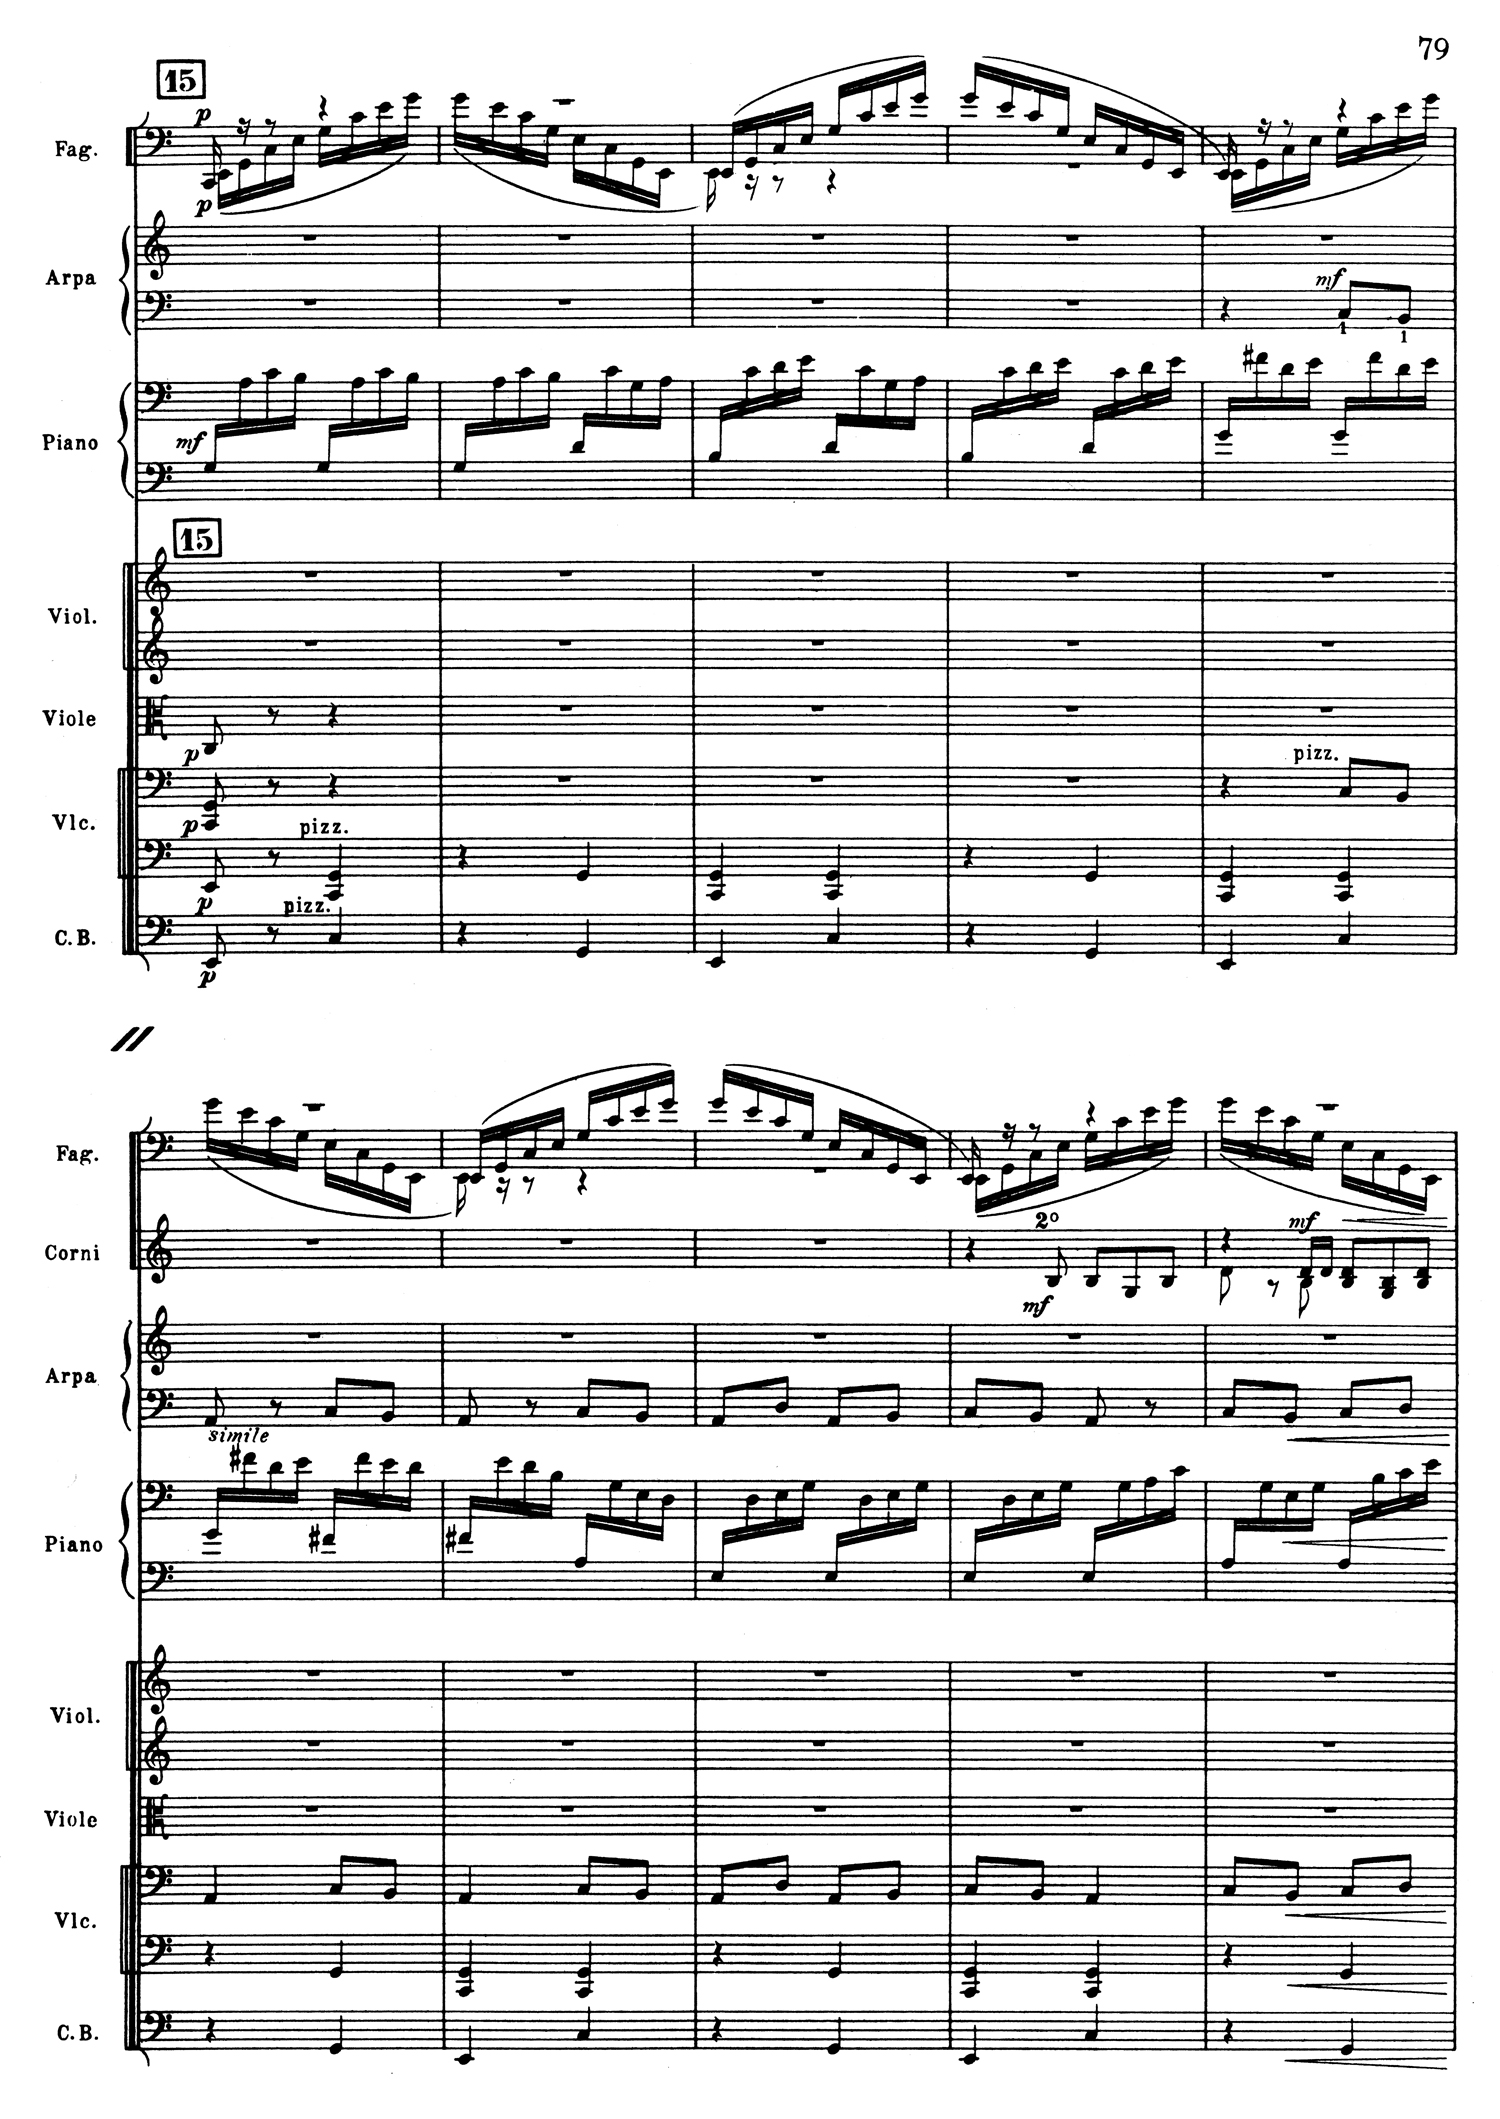 Ravel Piano Mvt 3 Score 3.jpg